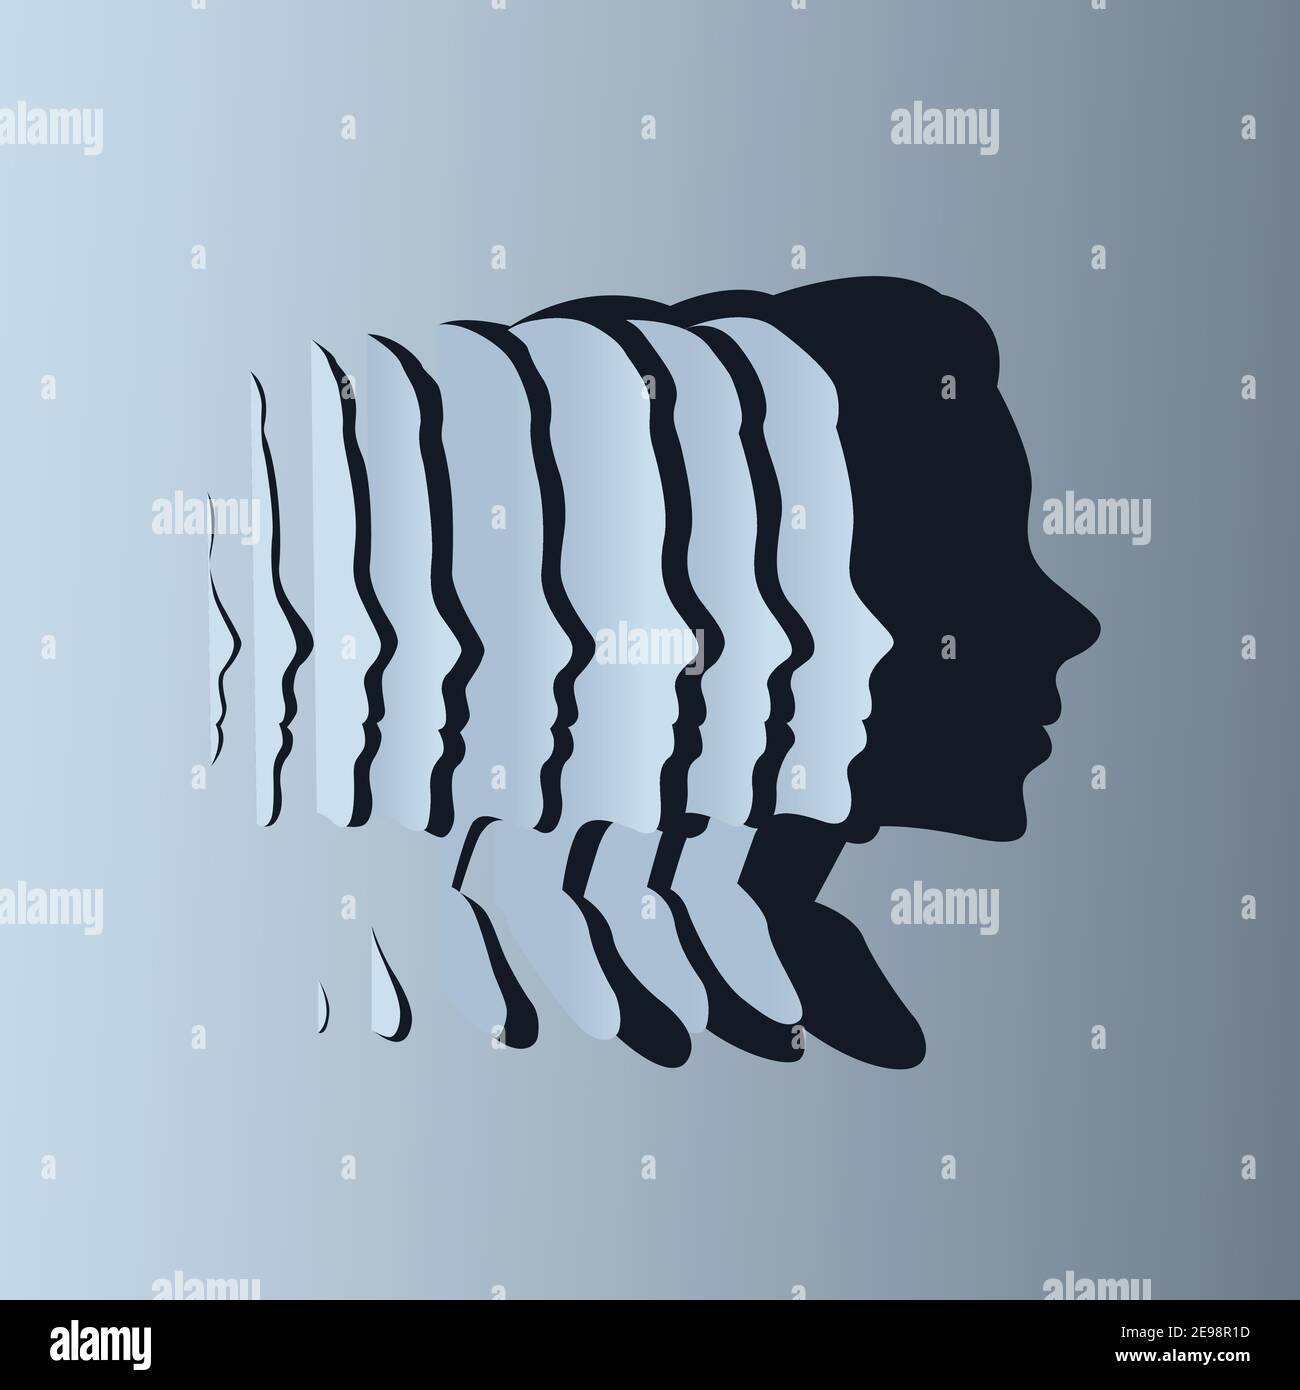 Fette di carta che creano un'ombra di silhouette di una forma femminile della testa. Concetto di salute, mente e benessere. Illustrazione vettoriale. Illustrazione Vettoriale